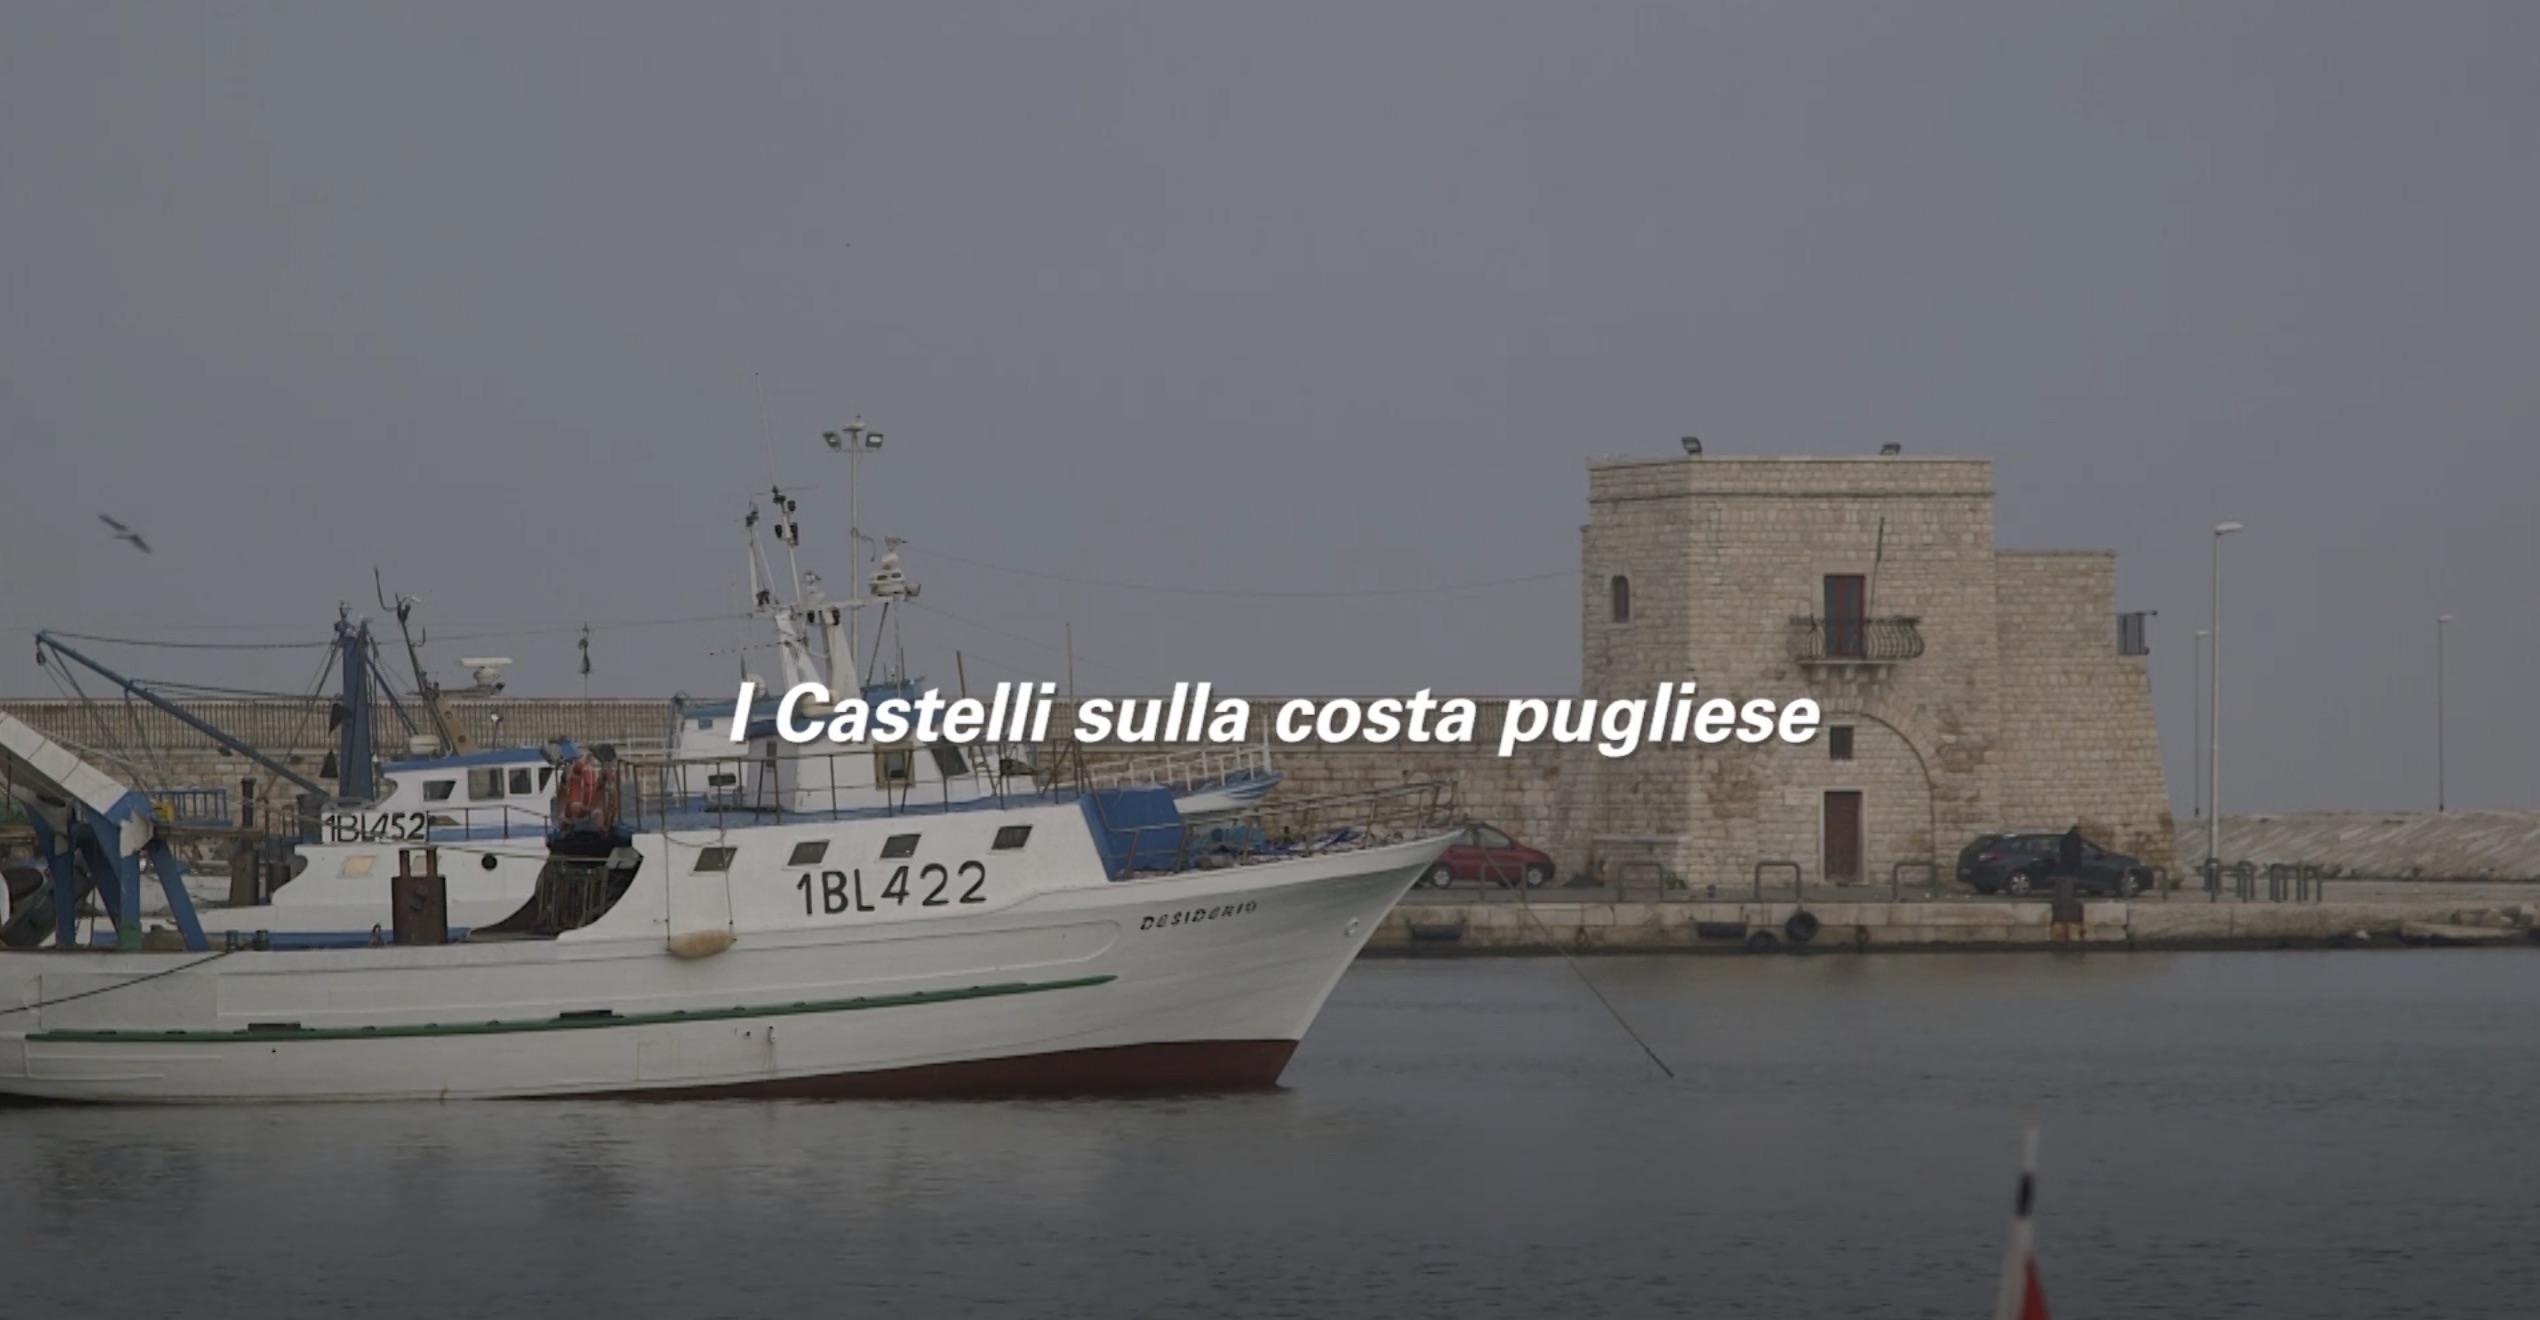 video.castelli-costa-pugliese.cover_.jpeg